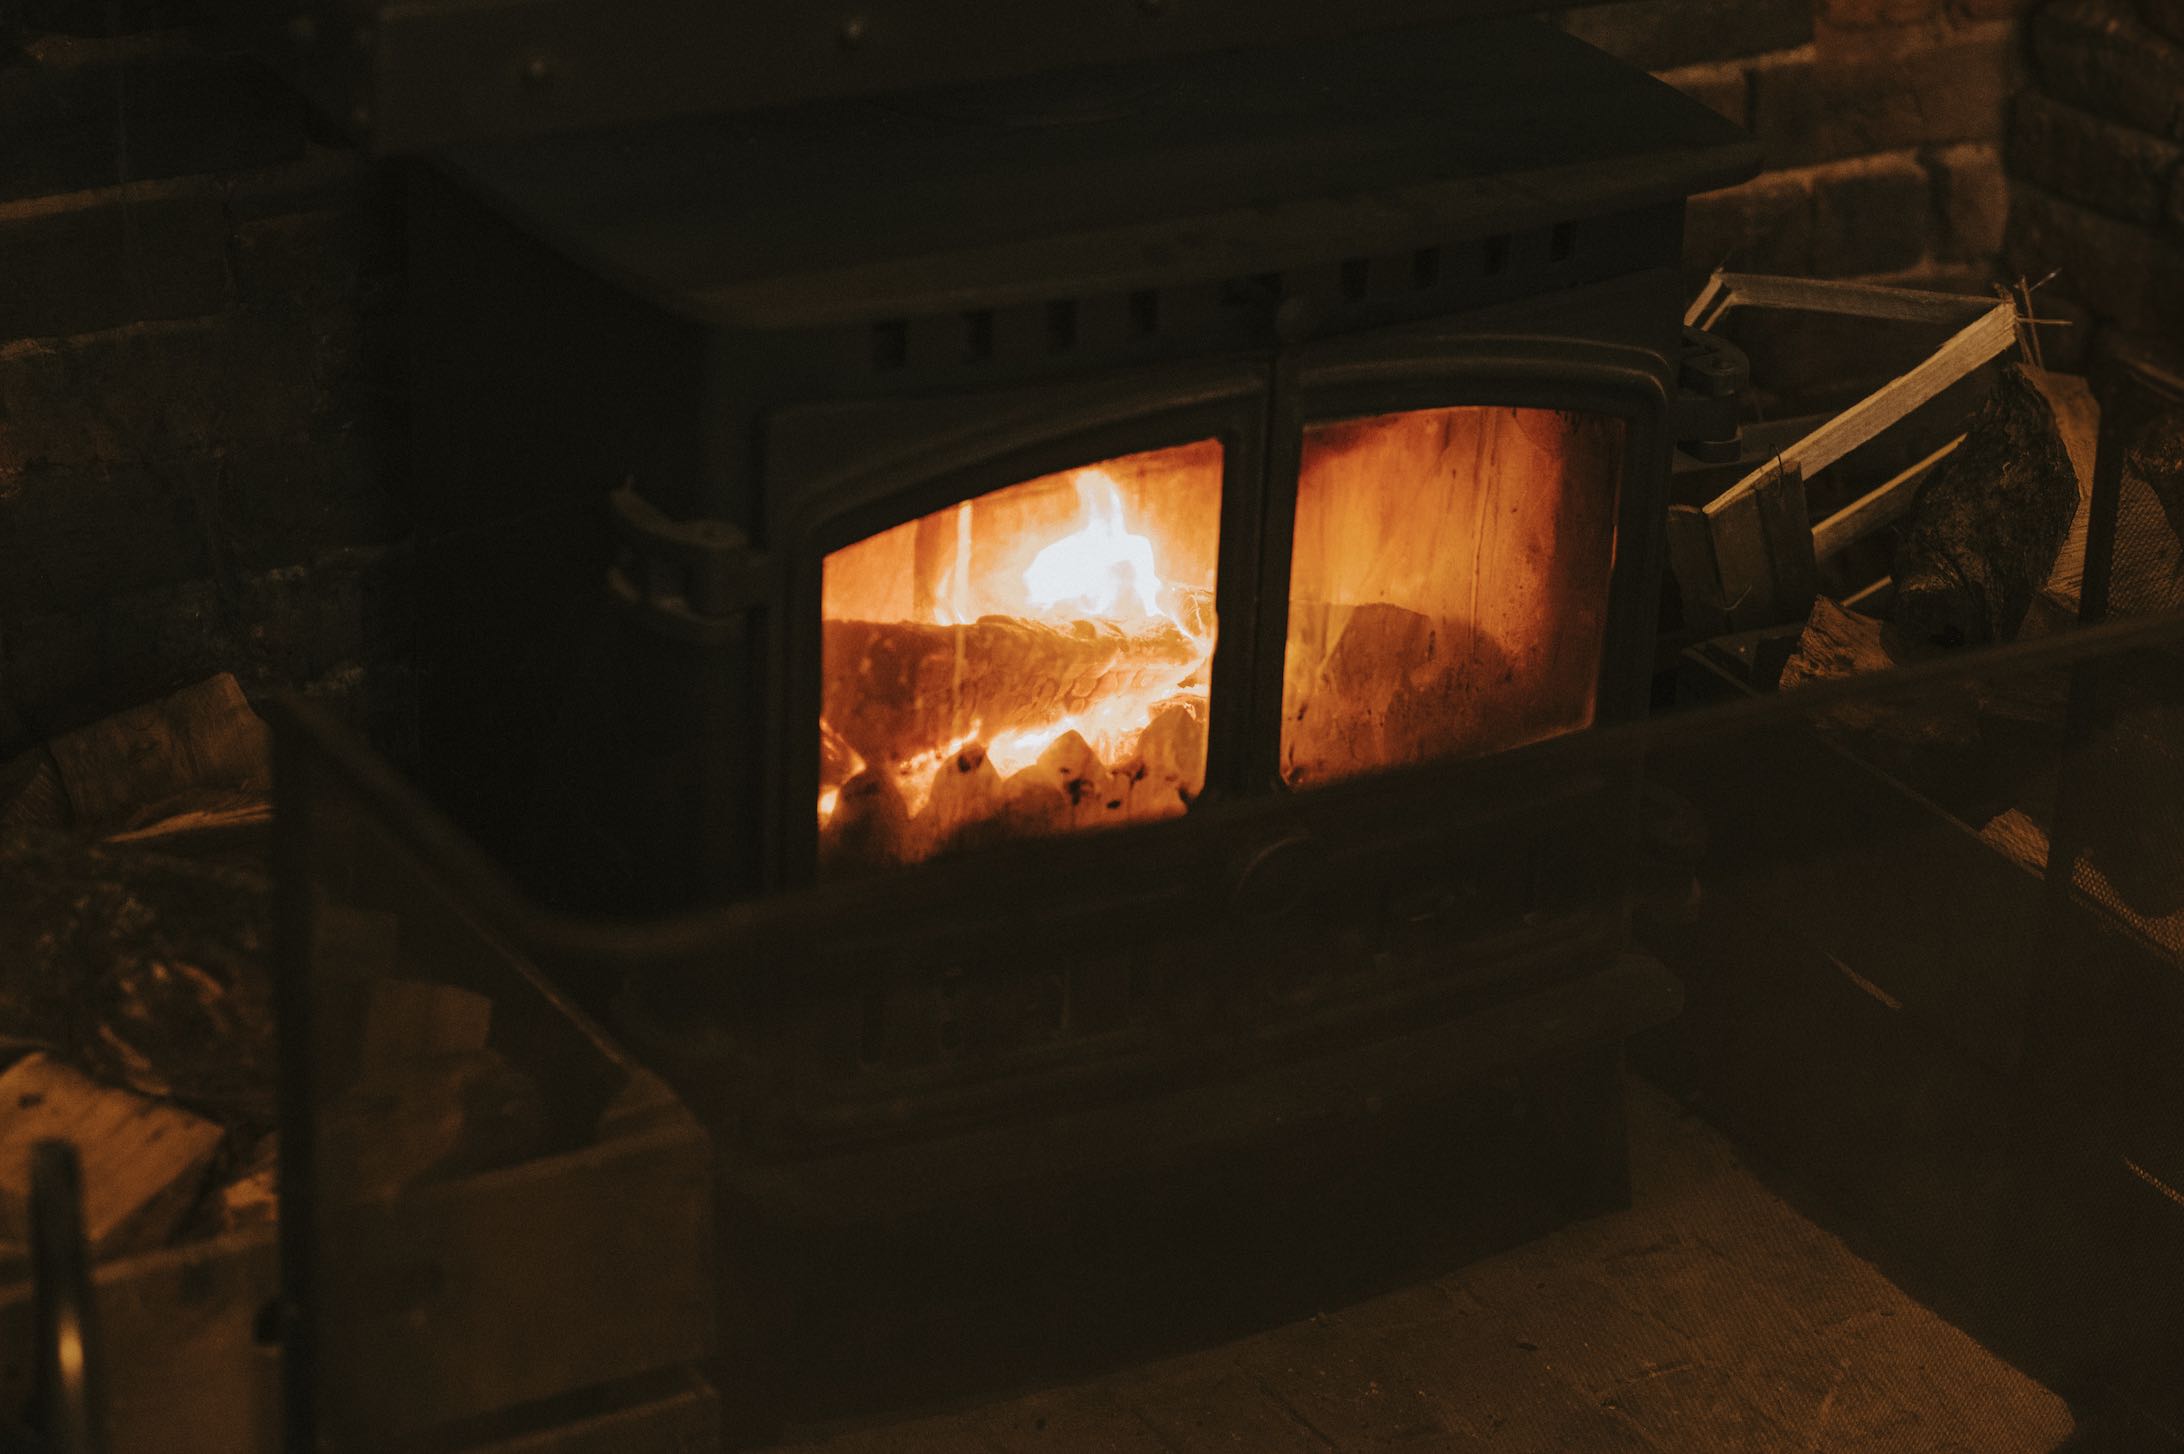 Ne pas négliger le ramonage des cheminées avant les premiers feux